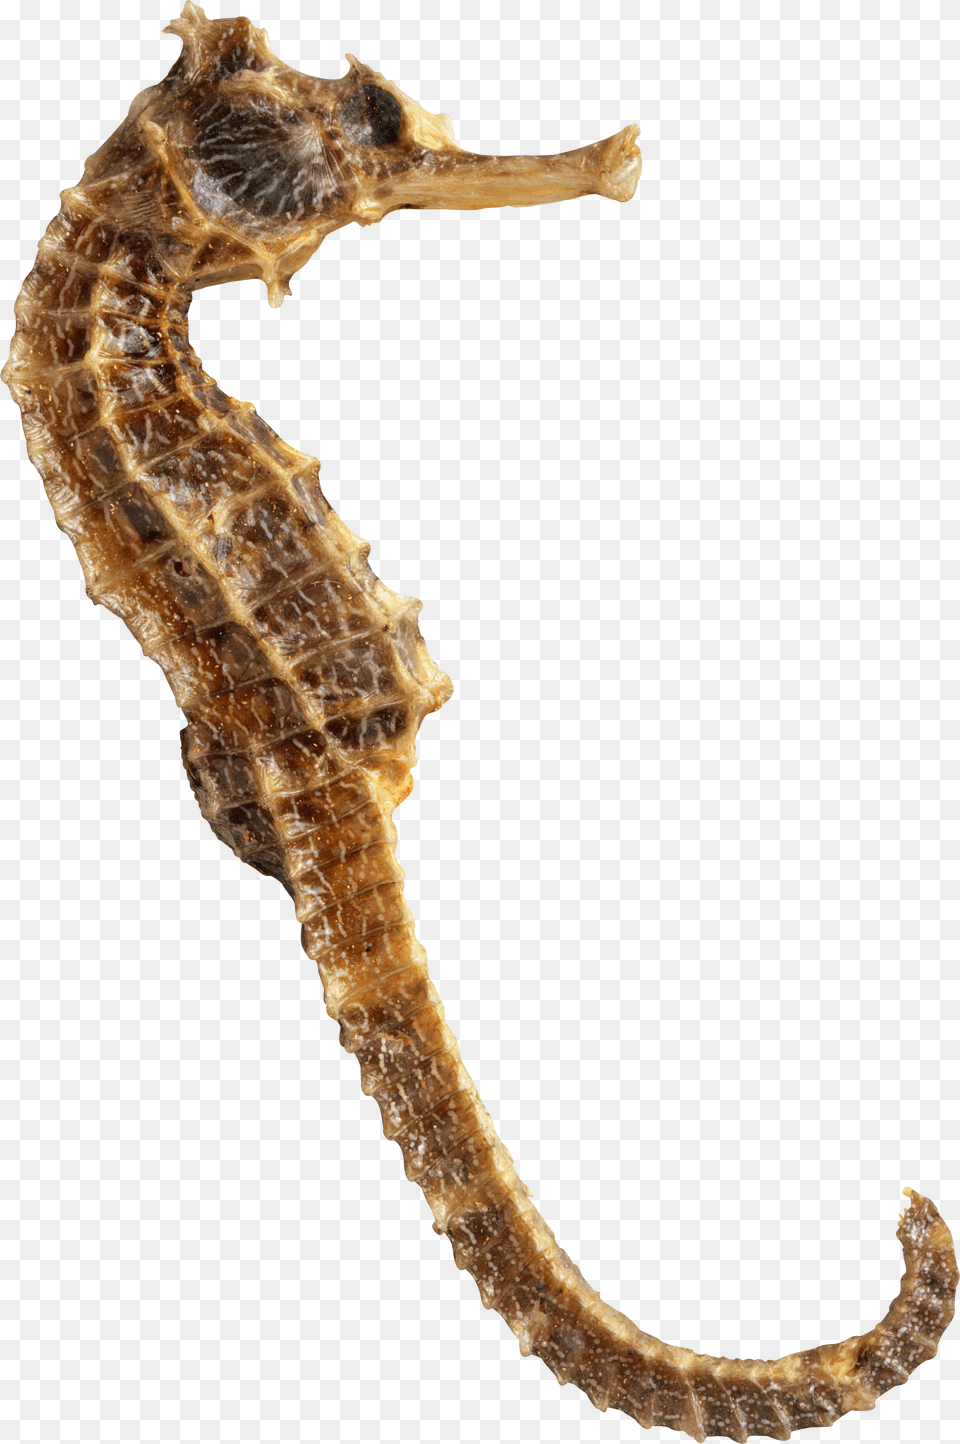 Seahorse, Animal, Mammal, Sea Life Png Image